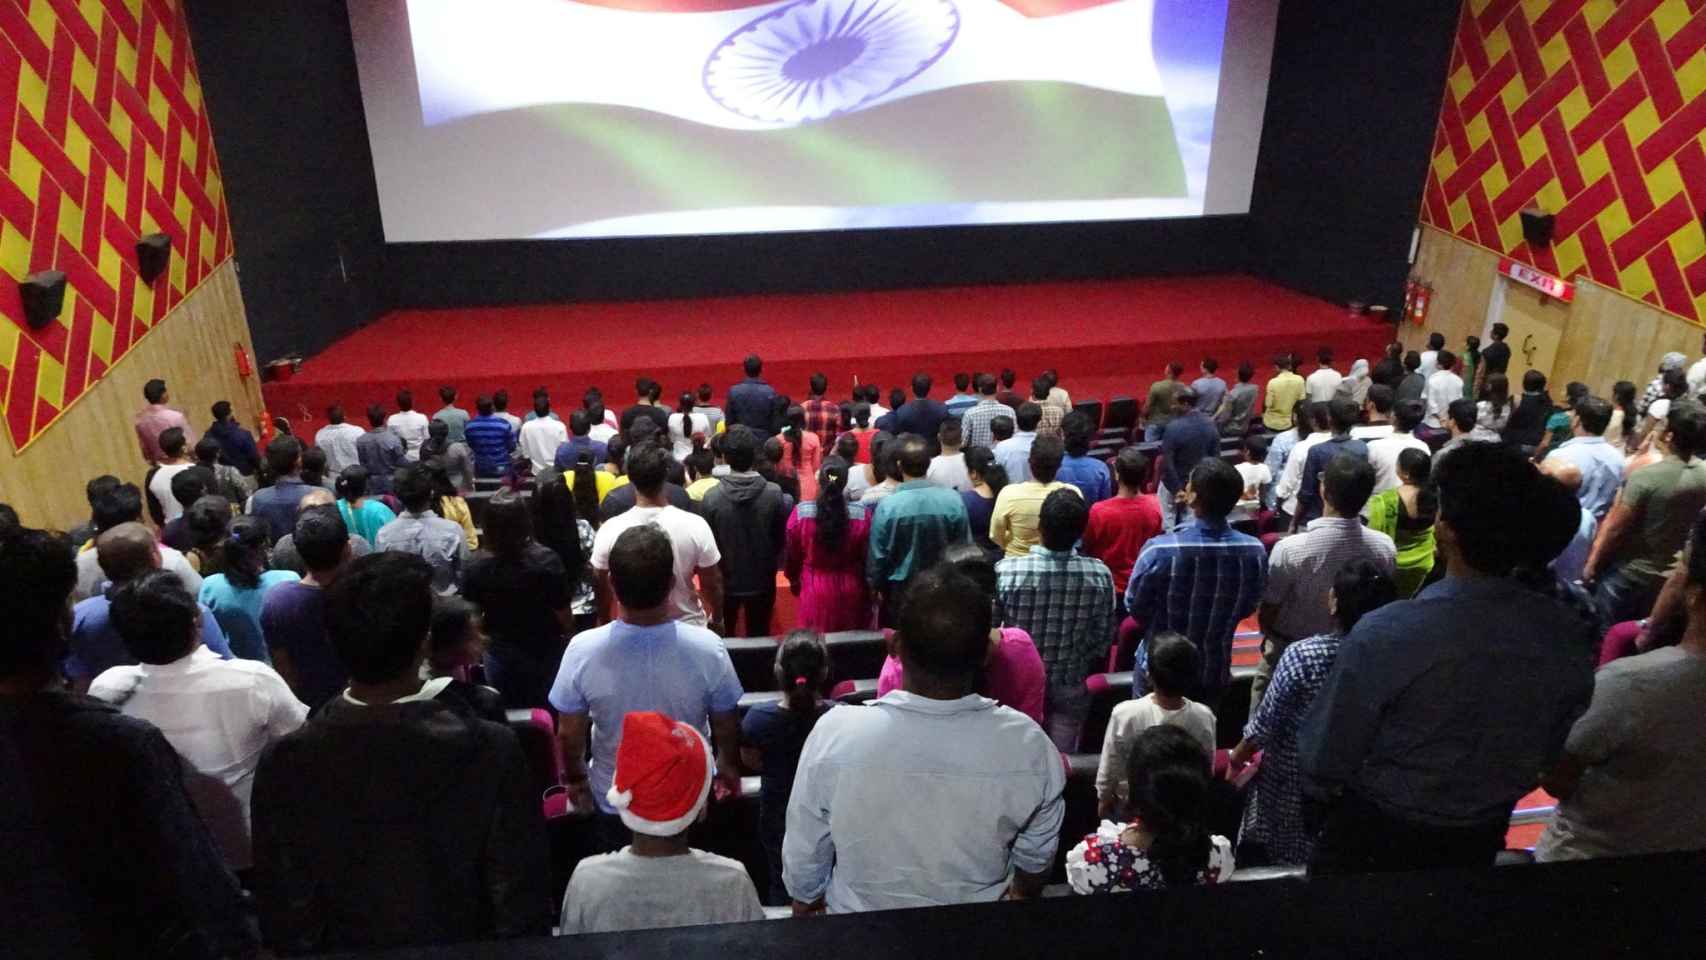 Hasta hace poco, antes de proyectar una película era obligatorio escuchar el himno indio